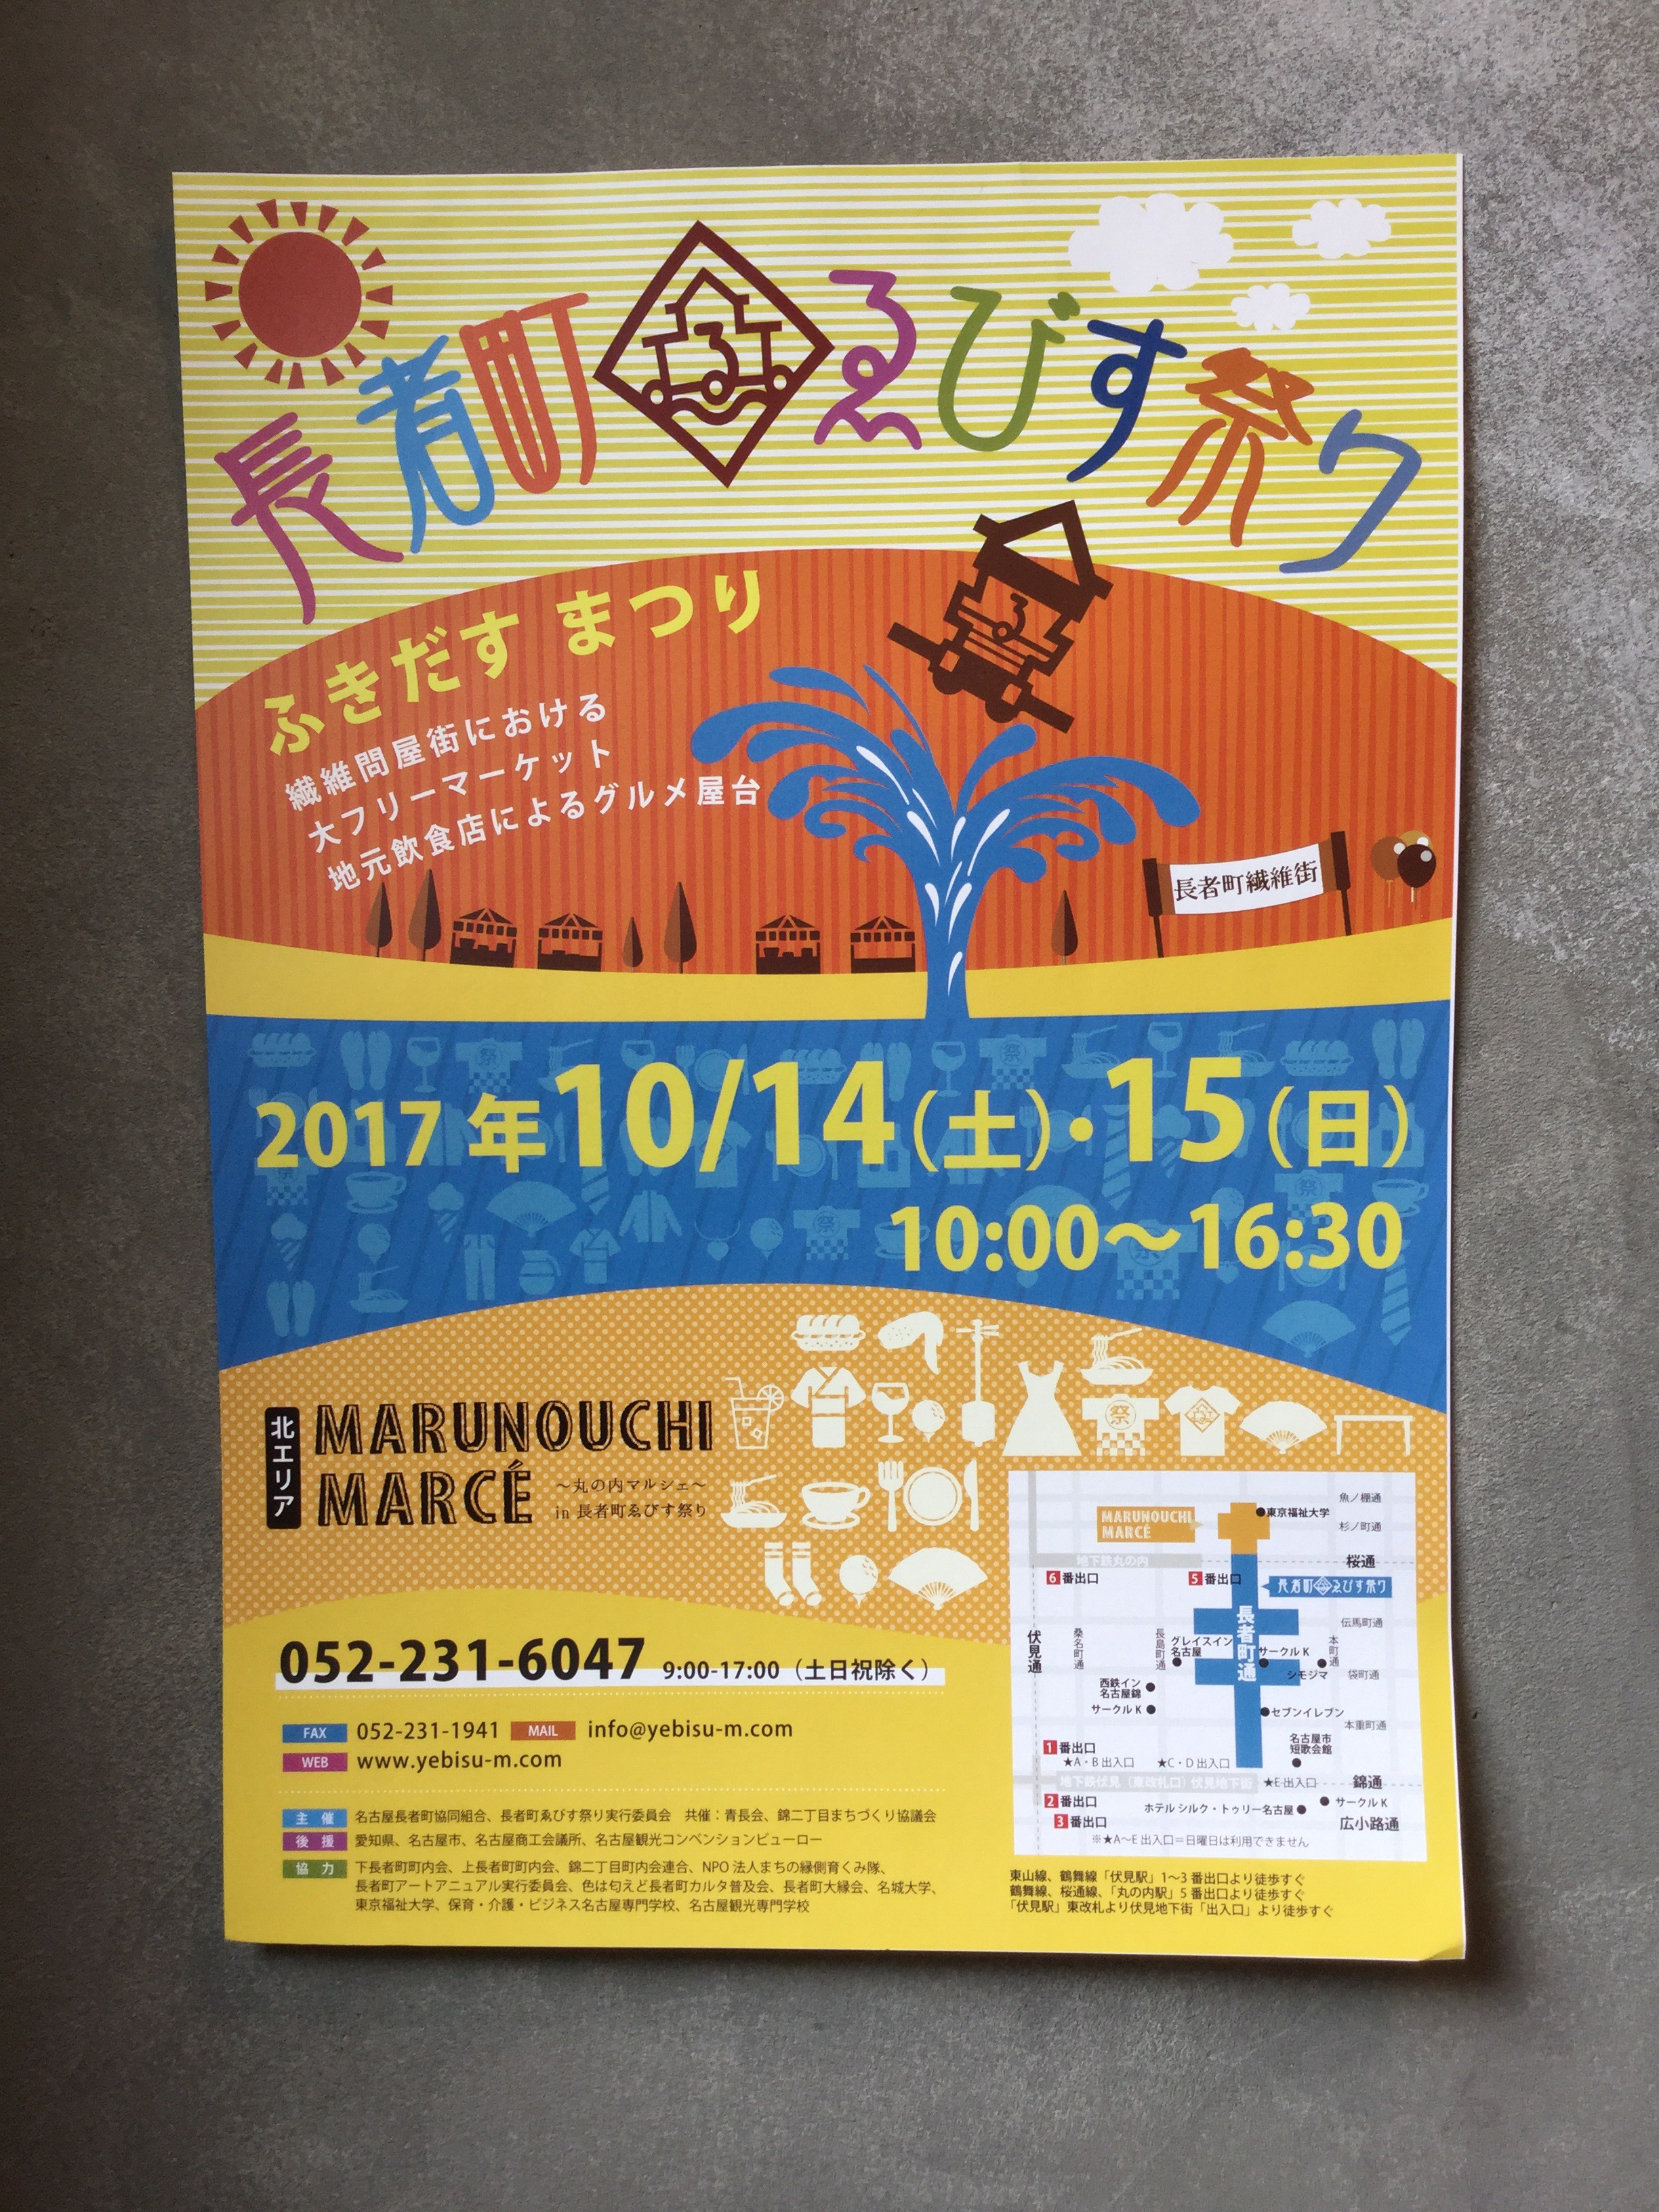 名古屋で人気の宅配弁当 ベジファーストの9月27日(水)ごぼう香るおおきなハンバーグ弁当